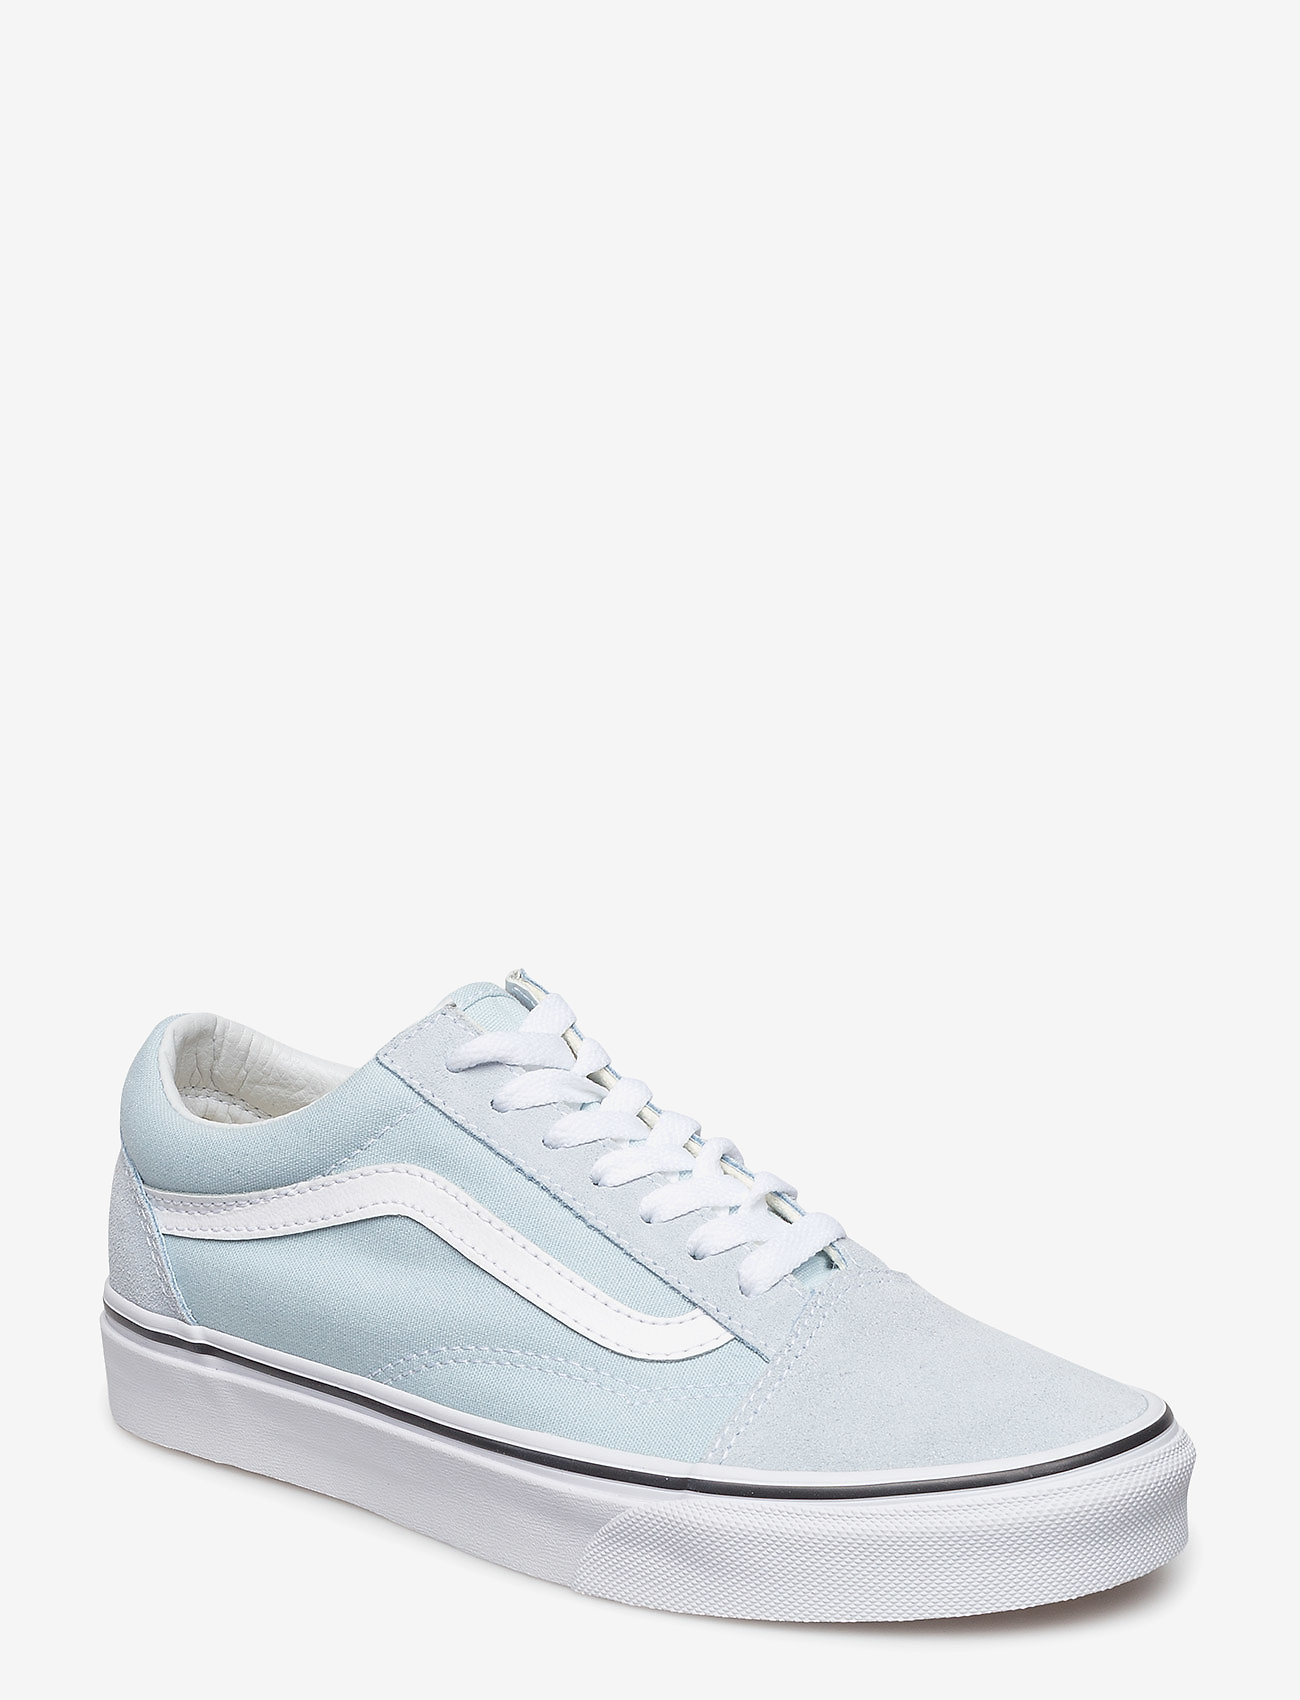 VANS - UA Old Skool - low top sneakers - baby blue/true white - 0